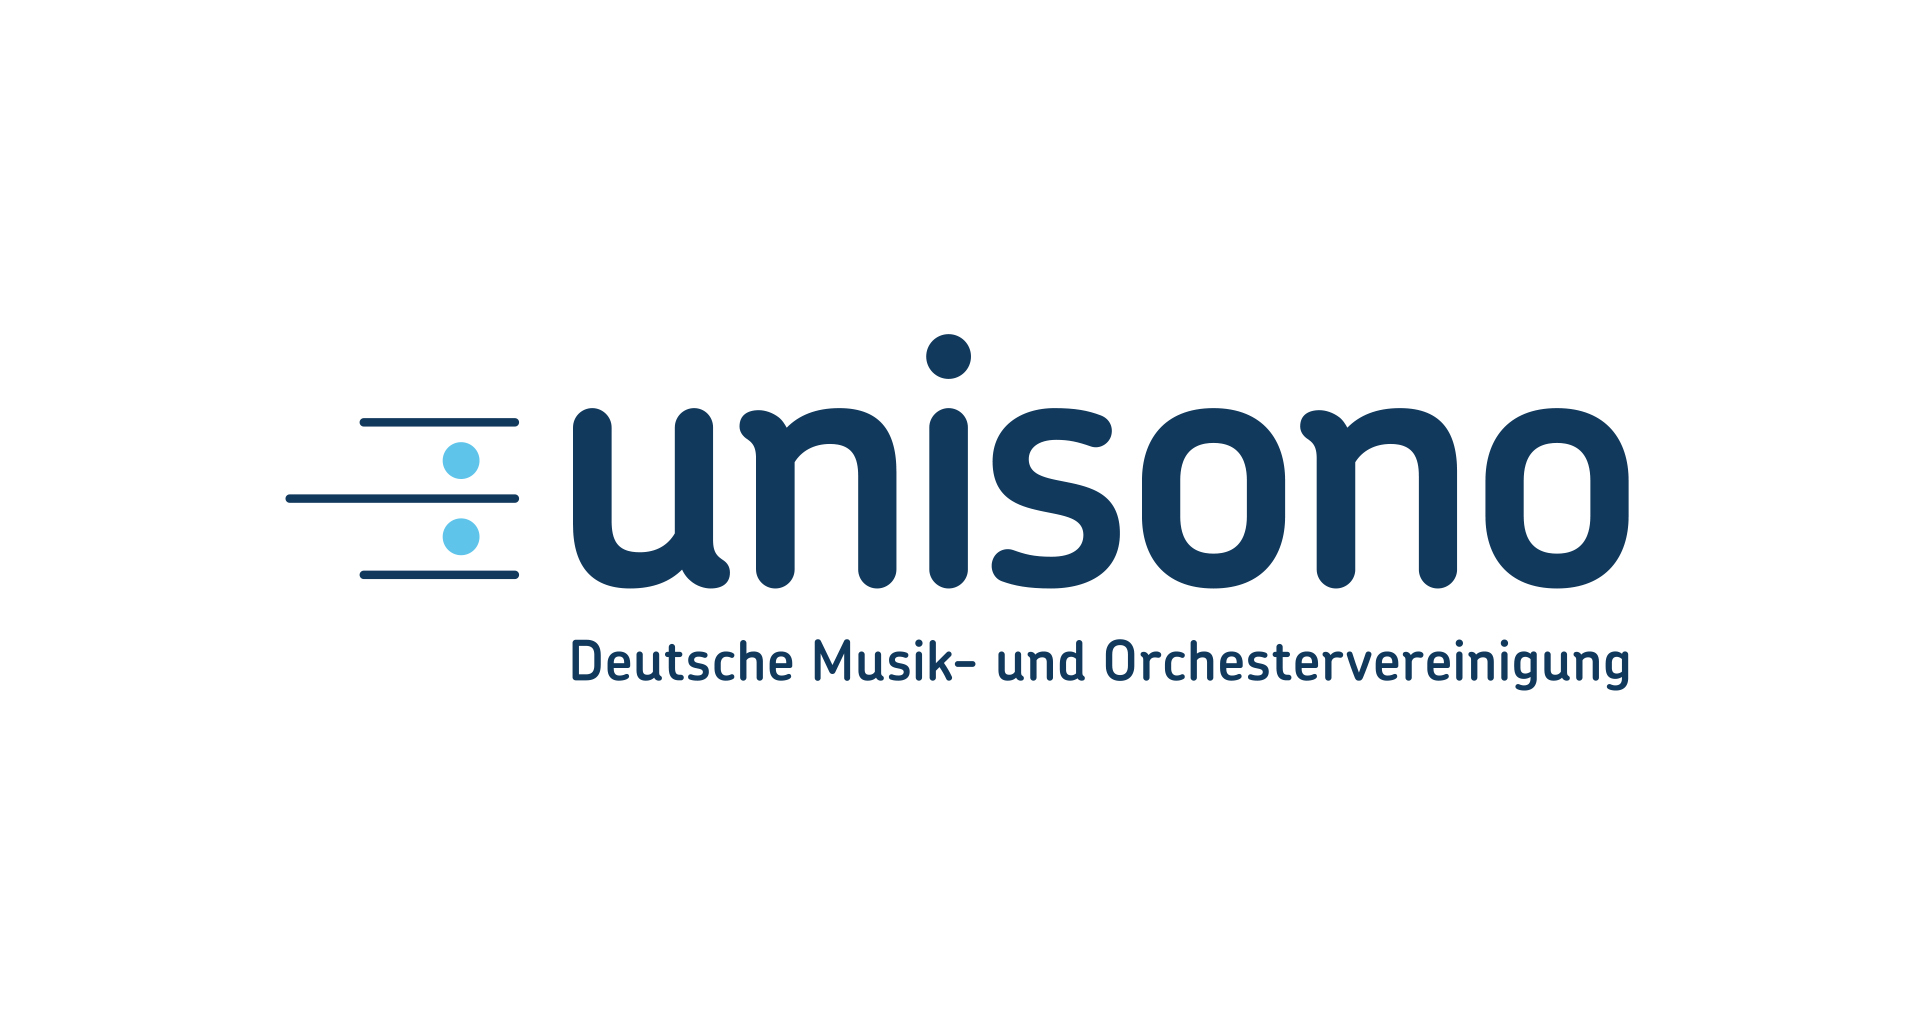 unisono Deutsche Musik- und Orchestervereinigung 